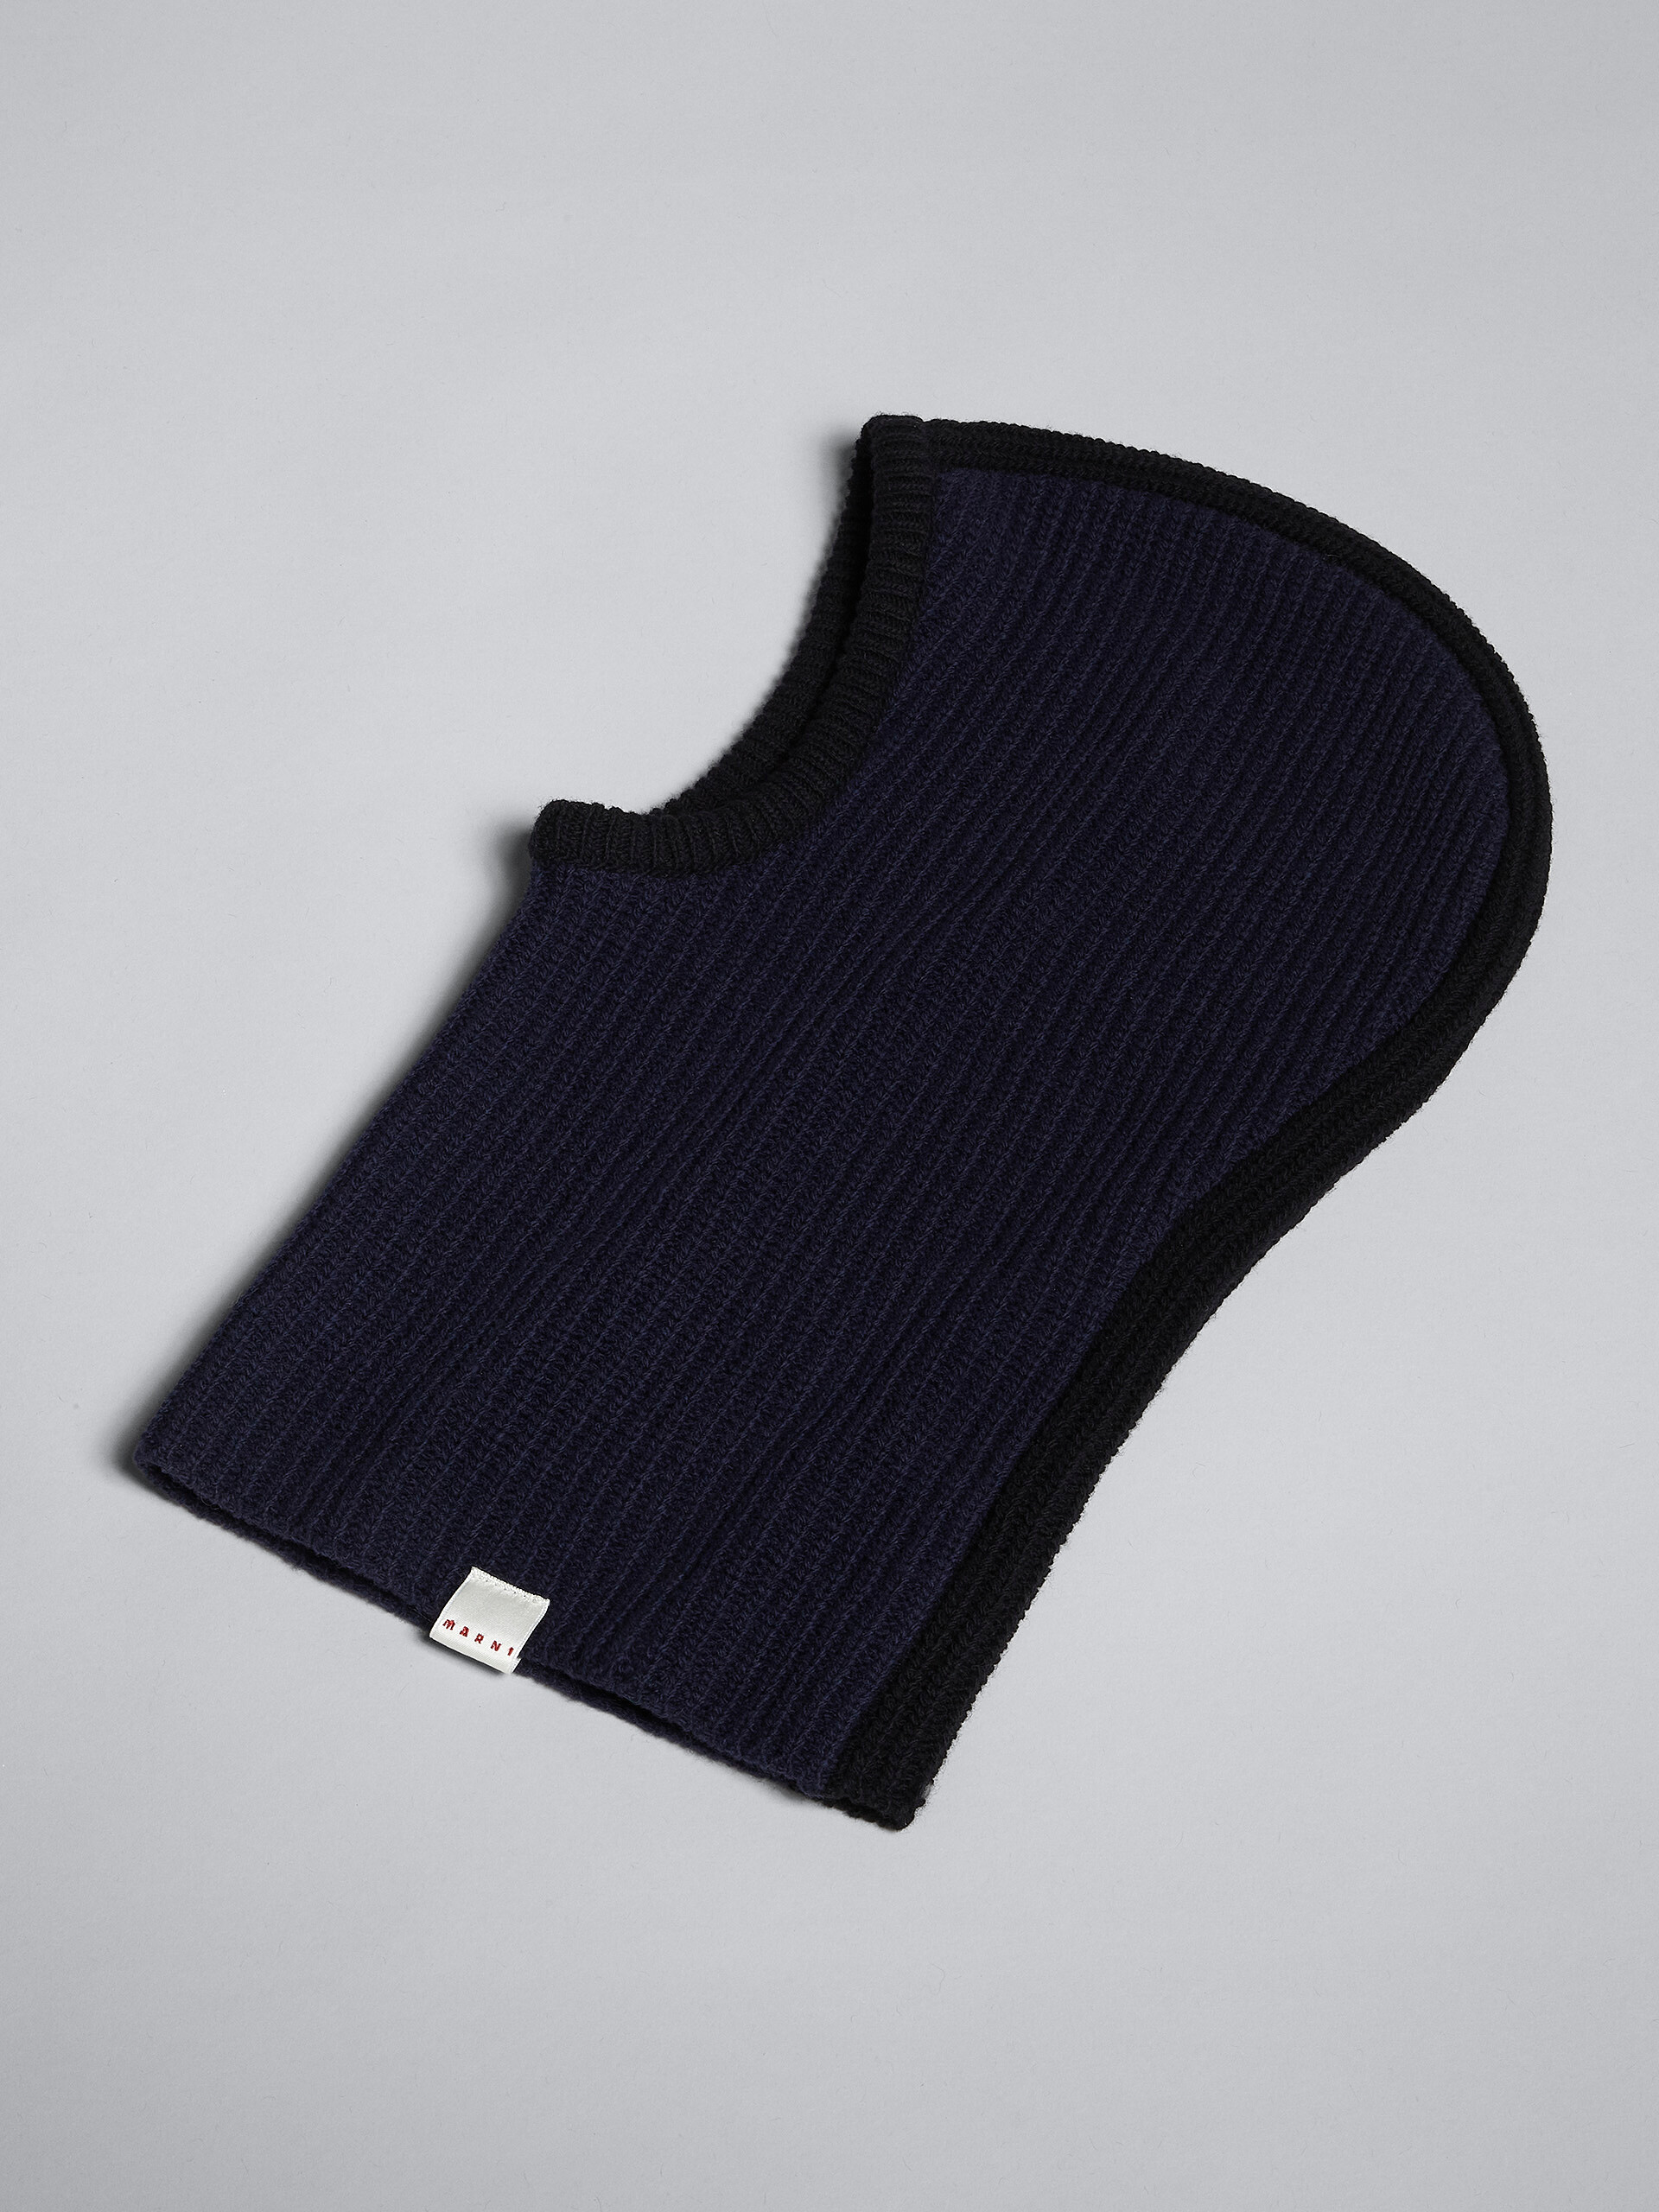 Pasamontañas de lana Shetland azul - Otros accesorios - Image 3